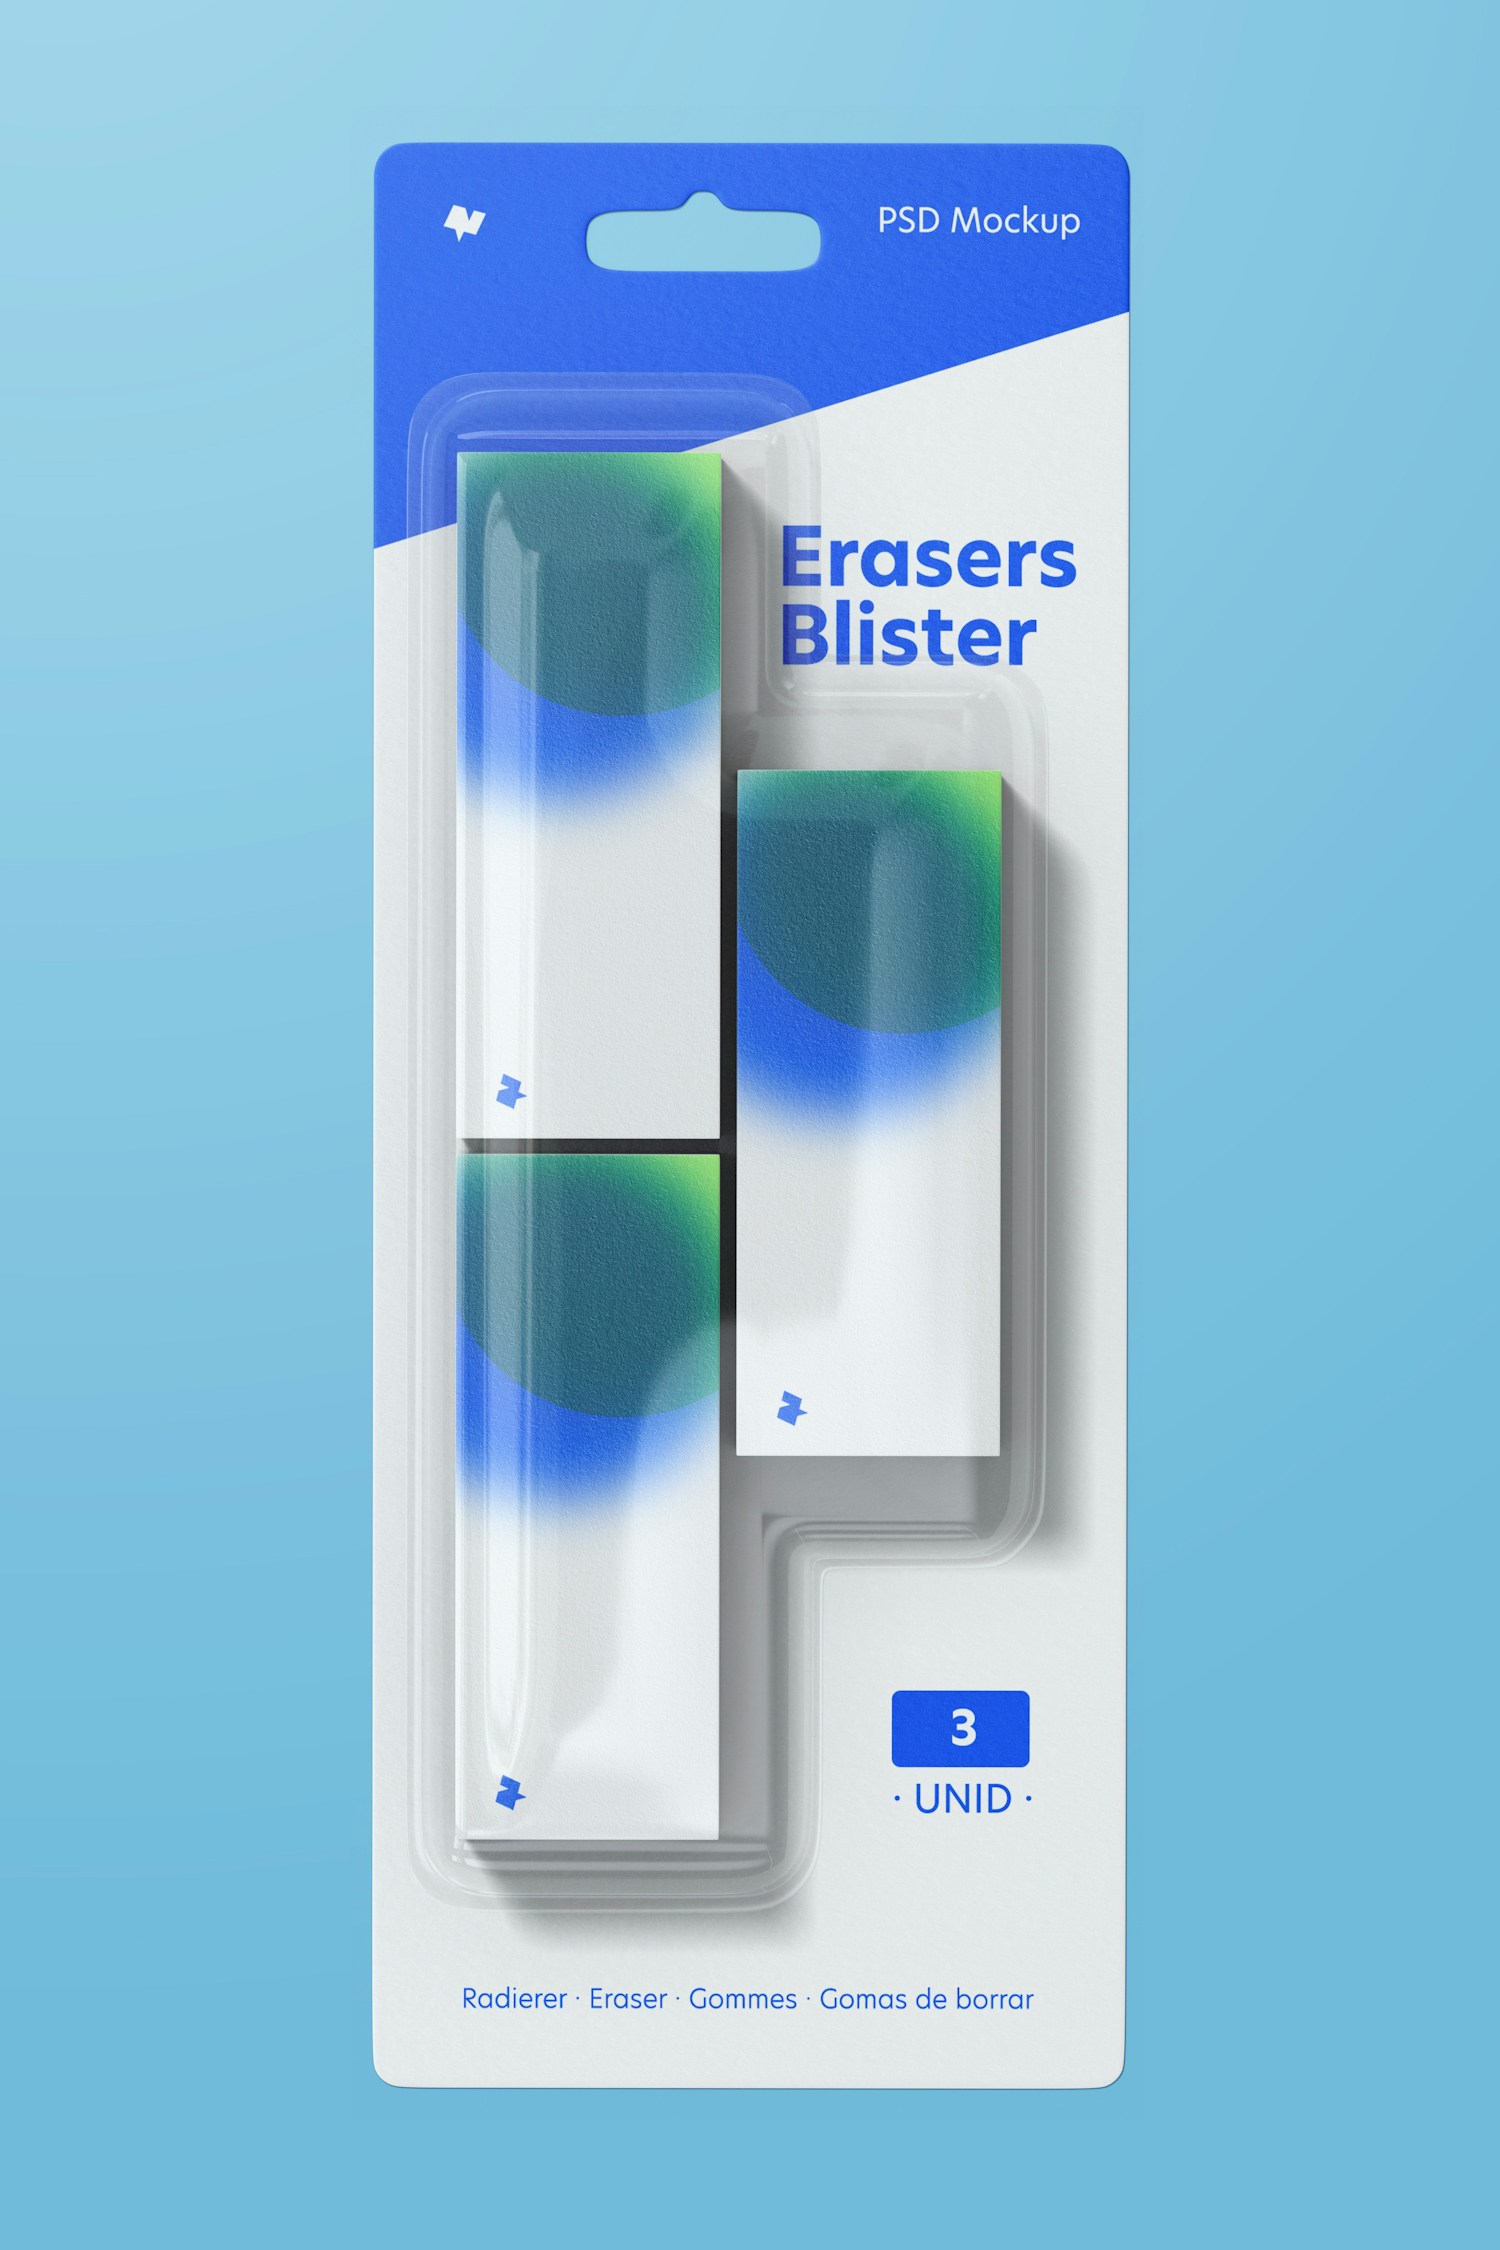 Erasers Blister Mockup